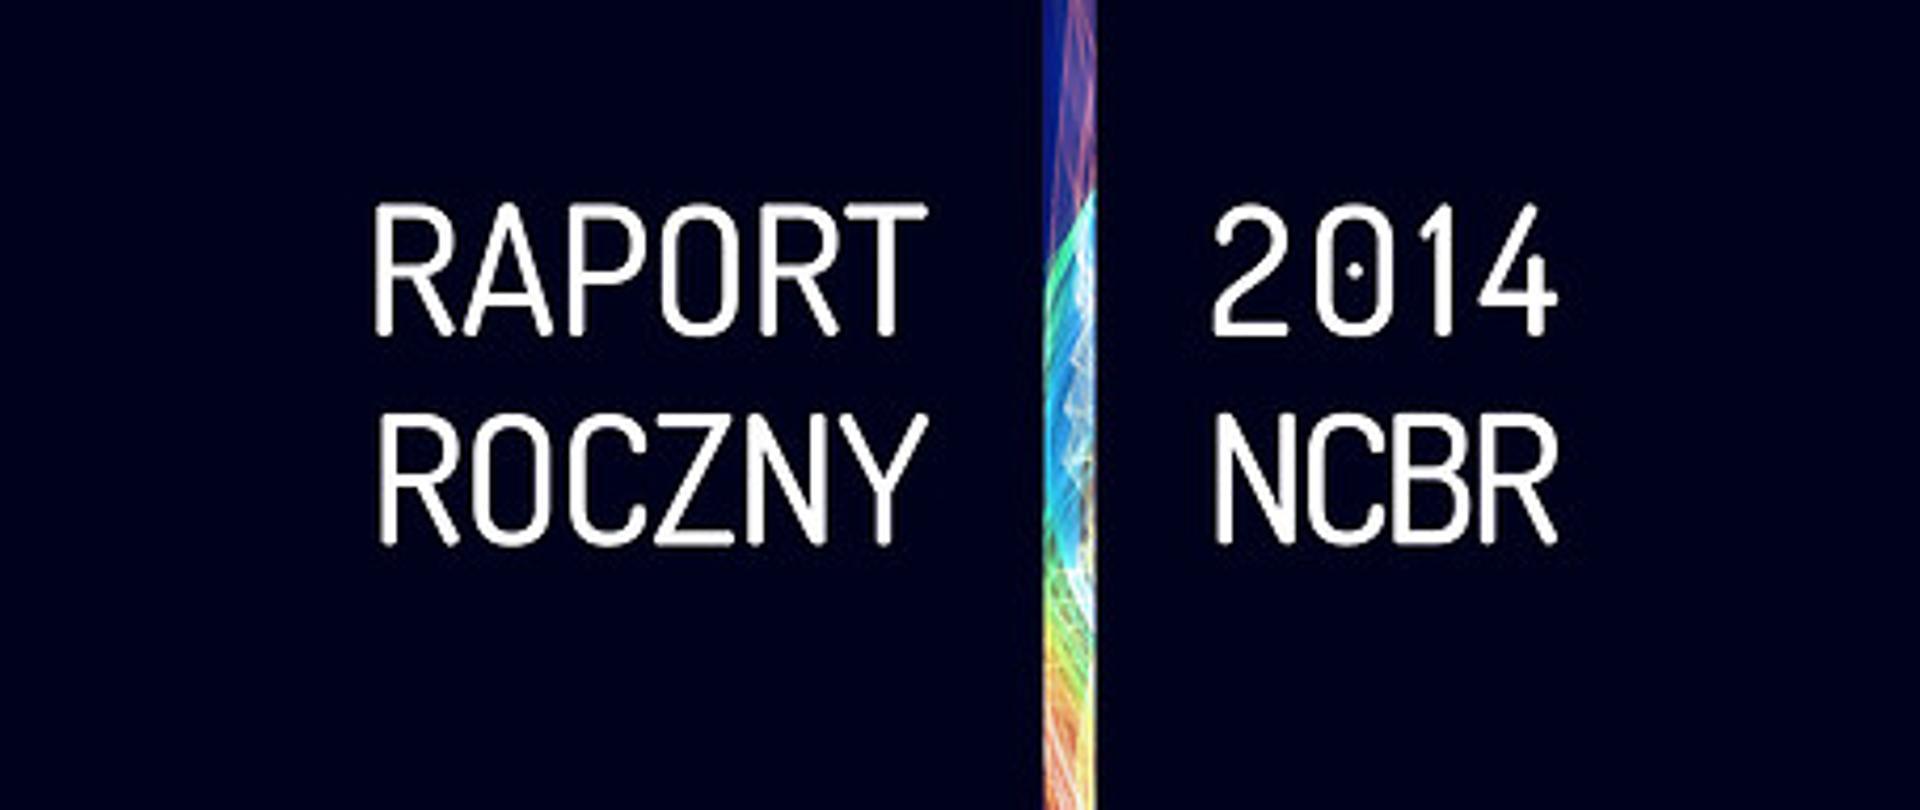 Biały napis Raport Roczny 2014 NCBR na niebieskim tle, na dole logo NCBR